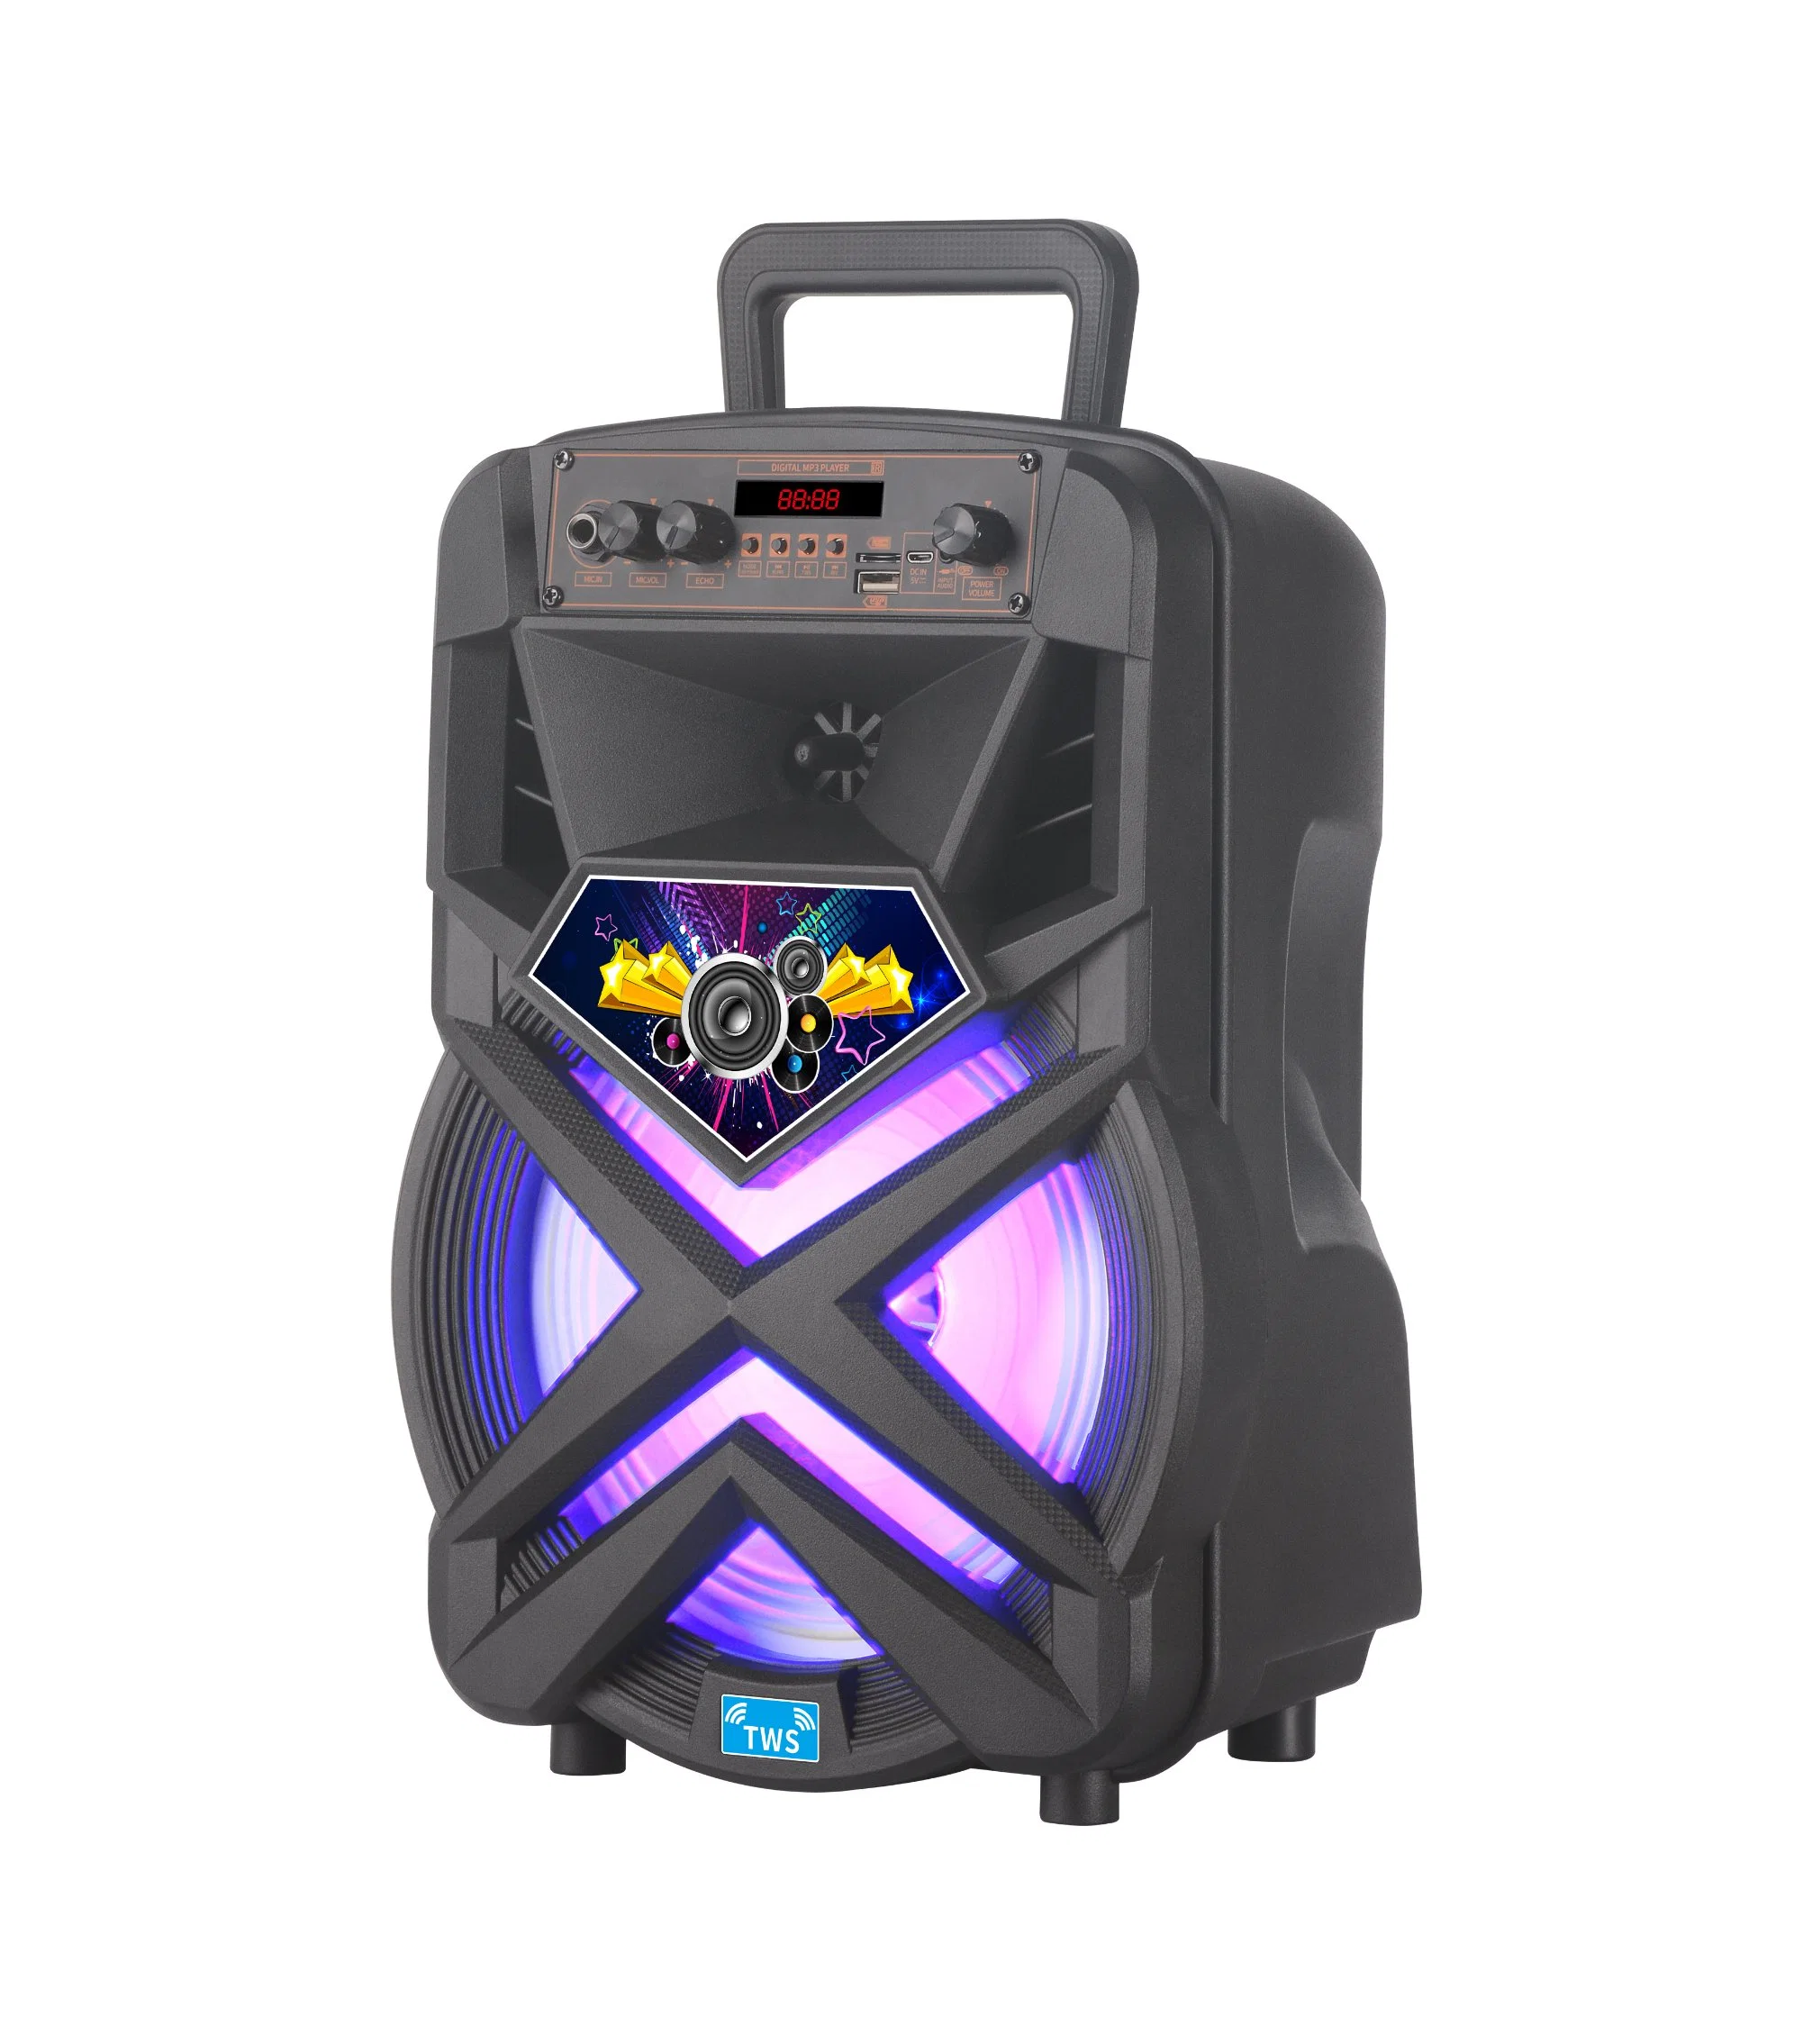 Hot Sell Bass Speaker with Colorful Light Drawbar Speaker